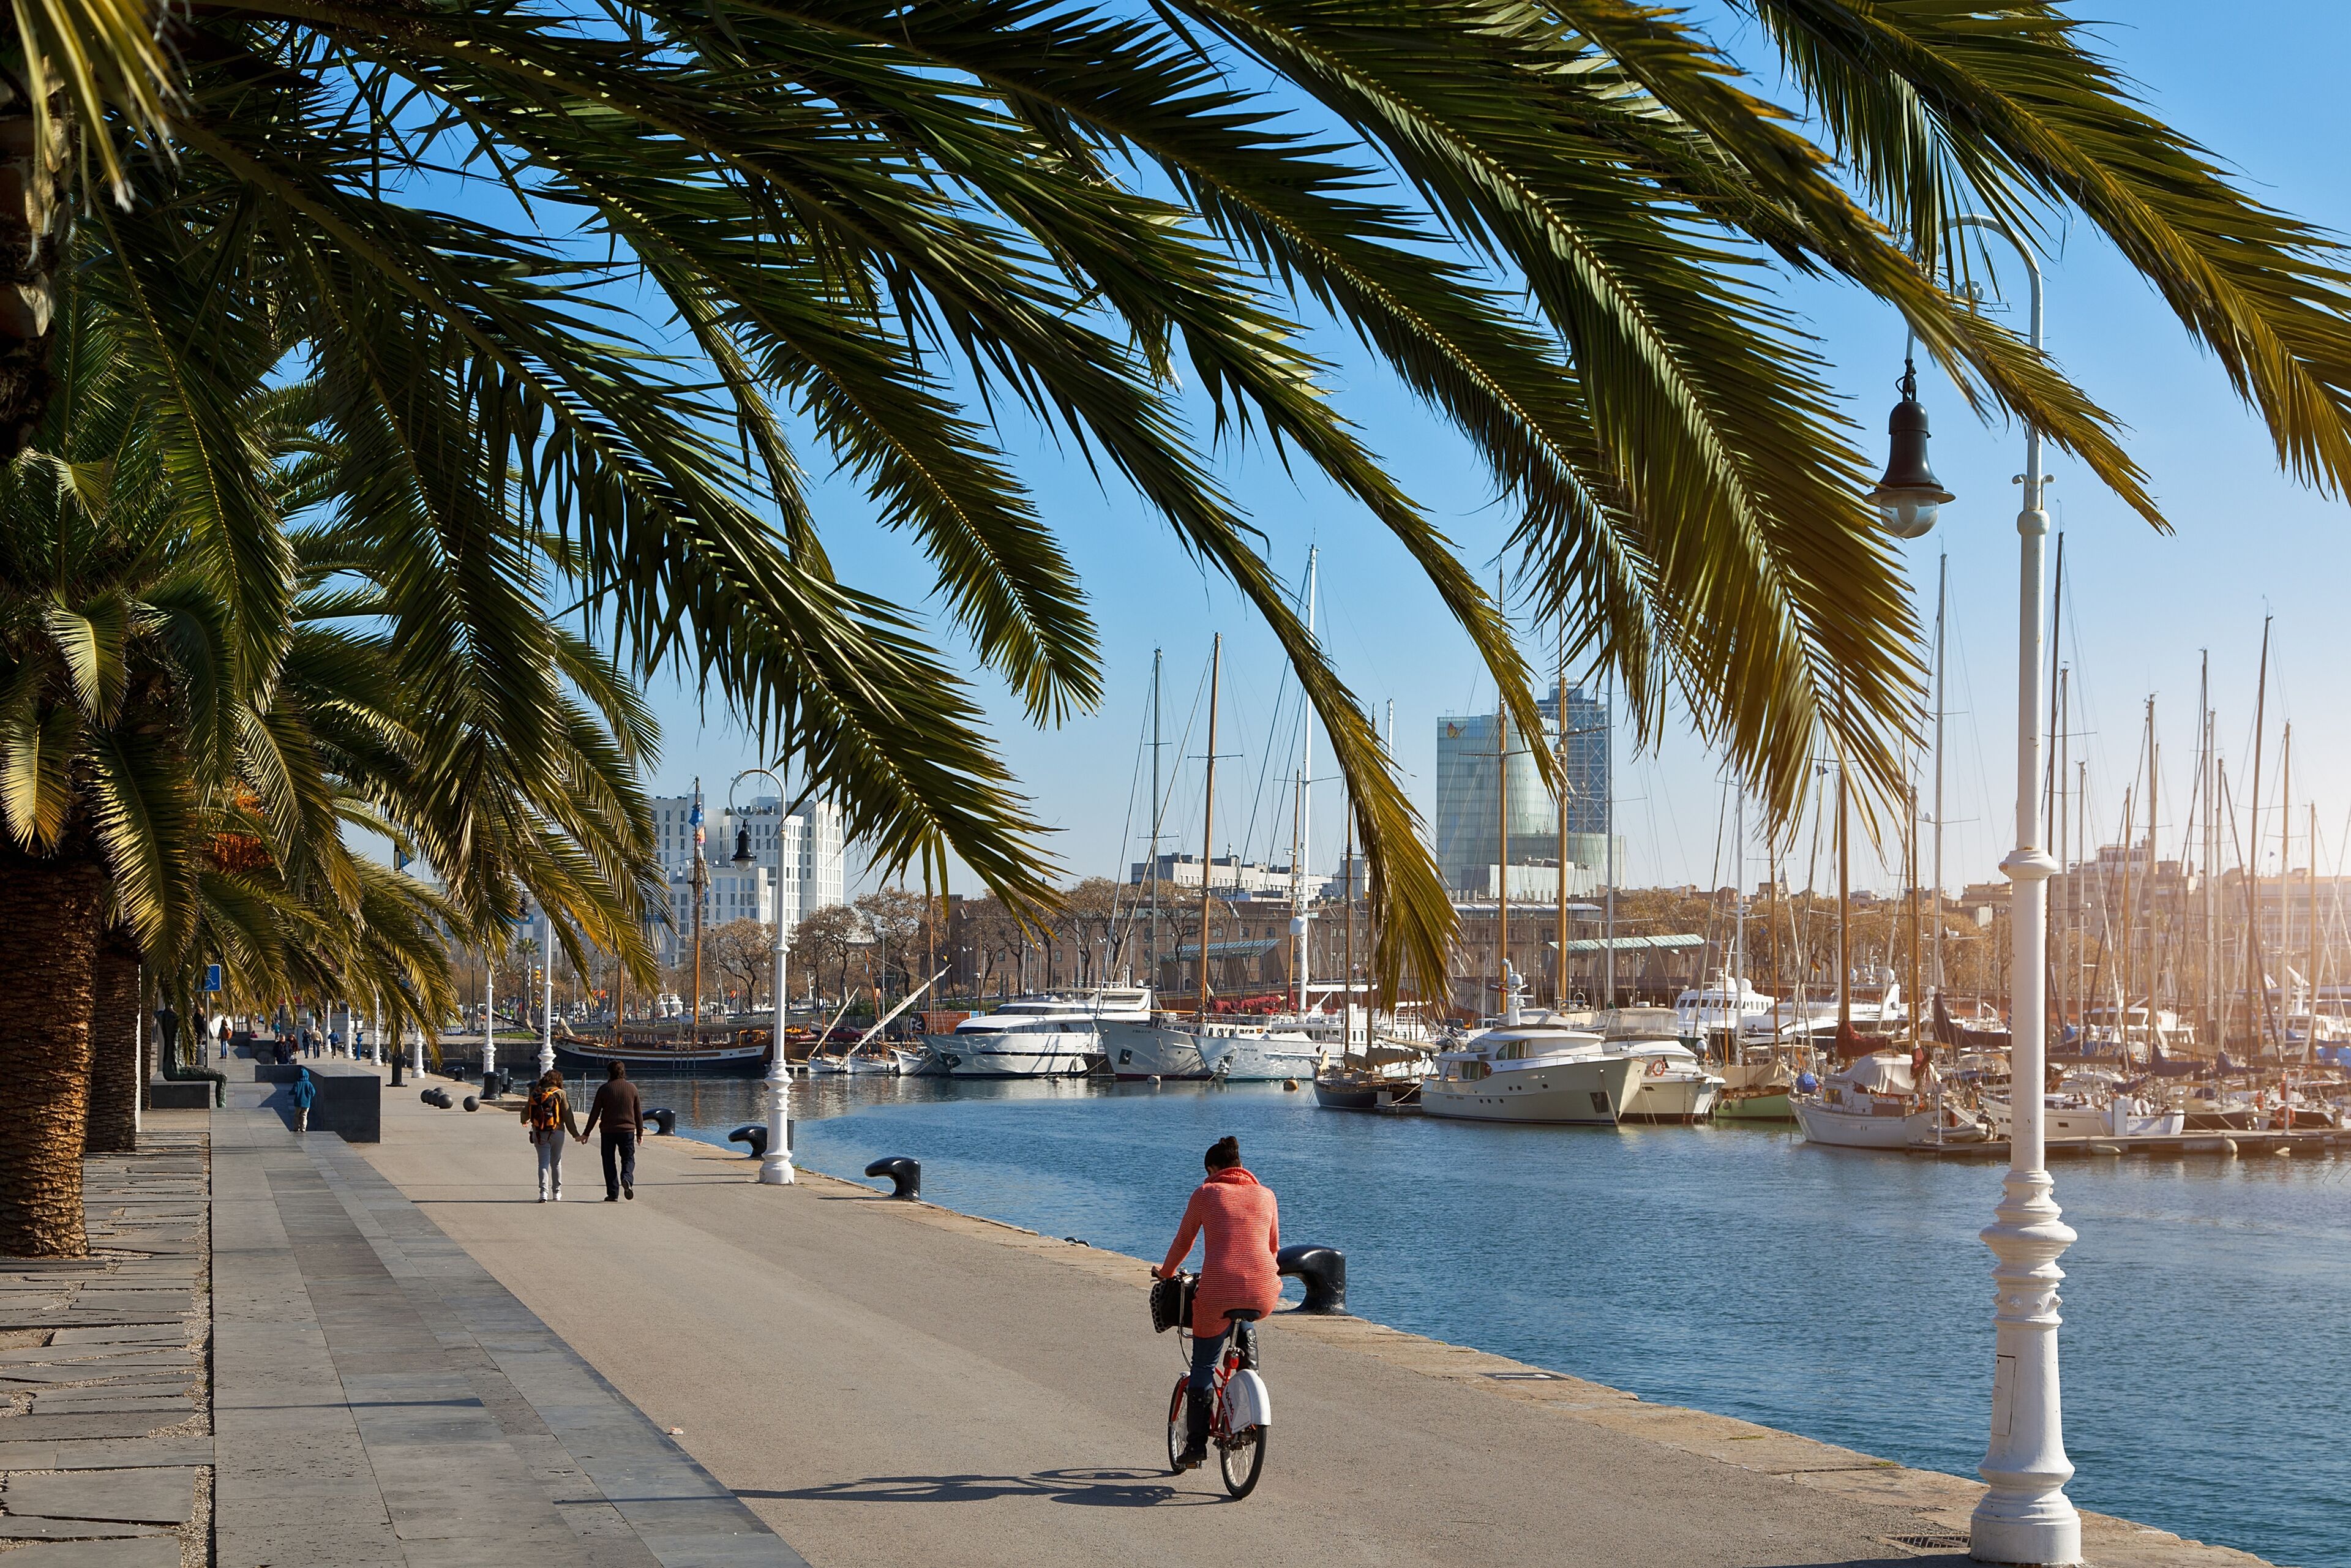 Un cycliste et des piétons profitent d'une journée ensoleillée sur une promenade bordée de palmiers, avec vue sur une marina remplie de bateaux et de yachts.